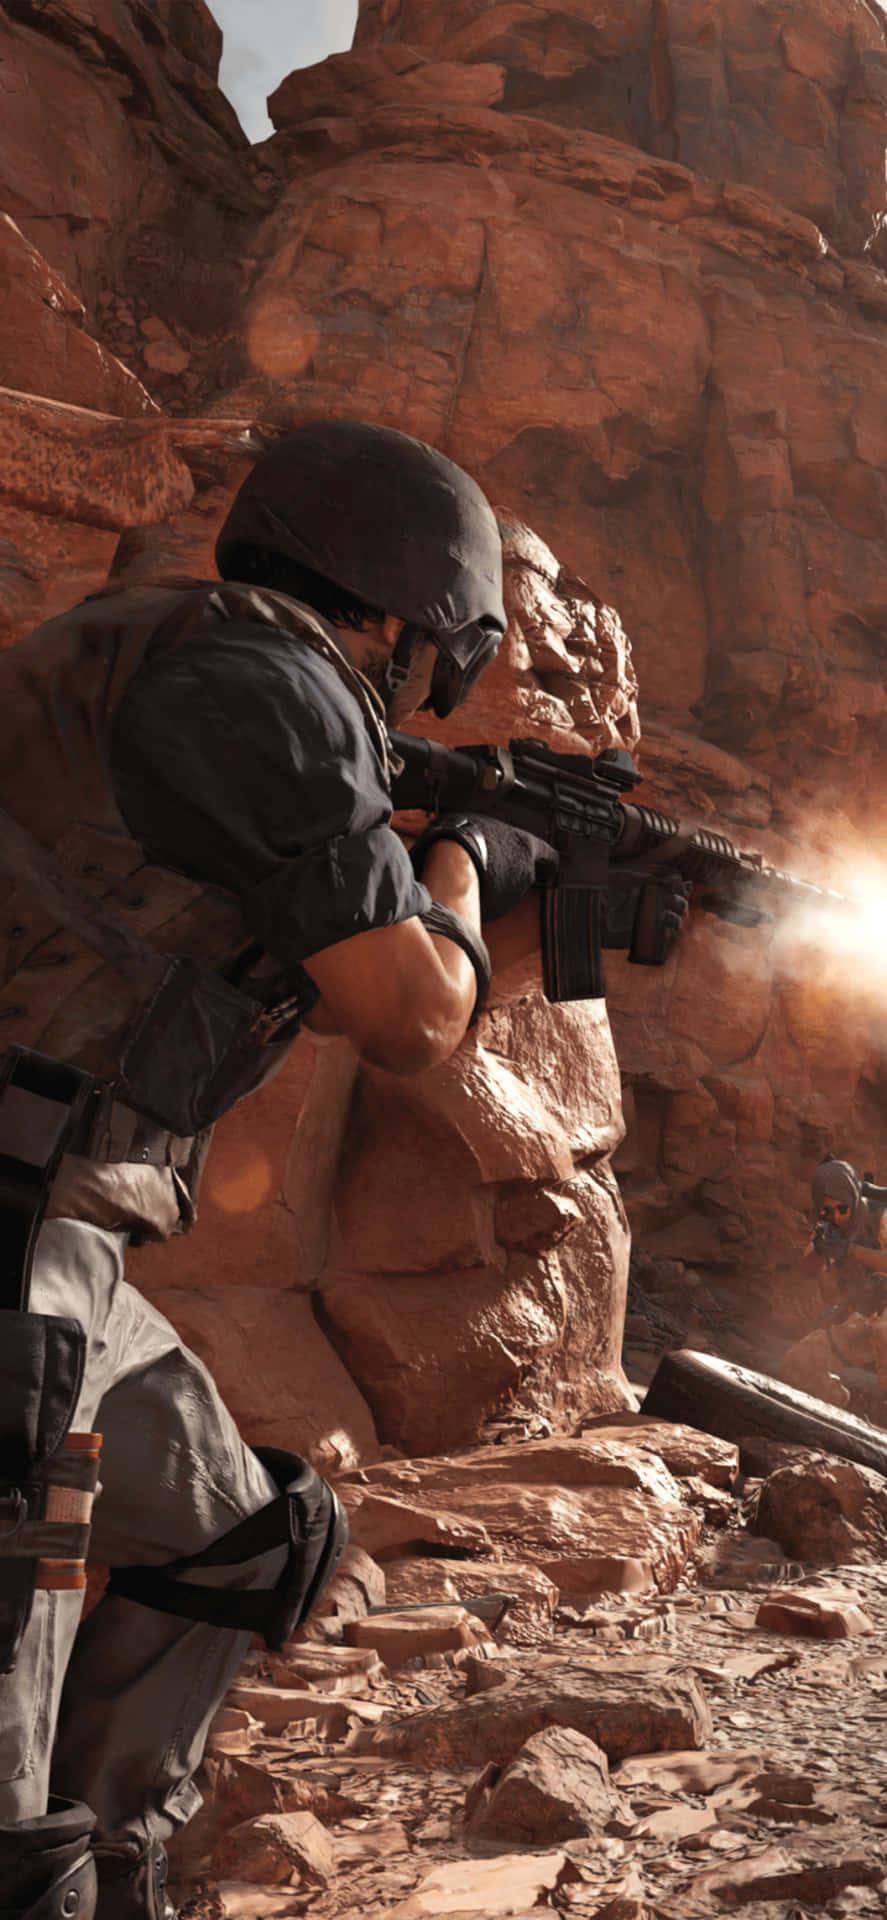 Iphonexs Bakgrundsbild Med Ökenmotiv Från Call Of Duty Black Ops Cold War.